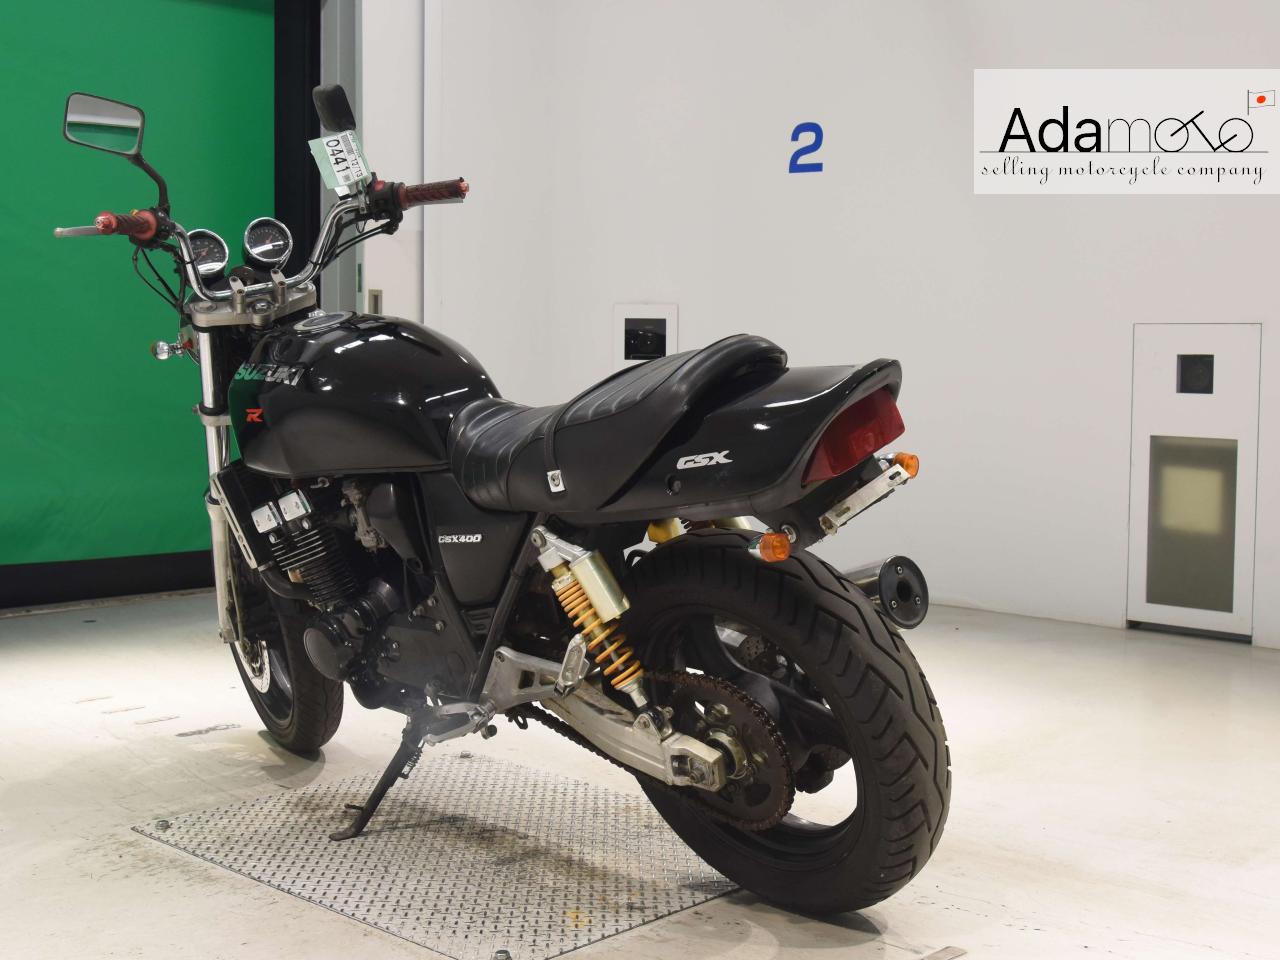 Suzuki GSX400 IMPULSE - Adamoto - Motorcycles from Japan